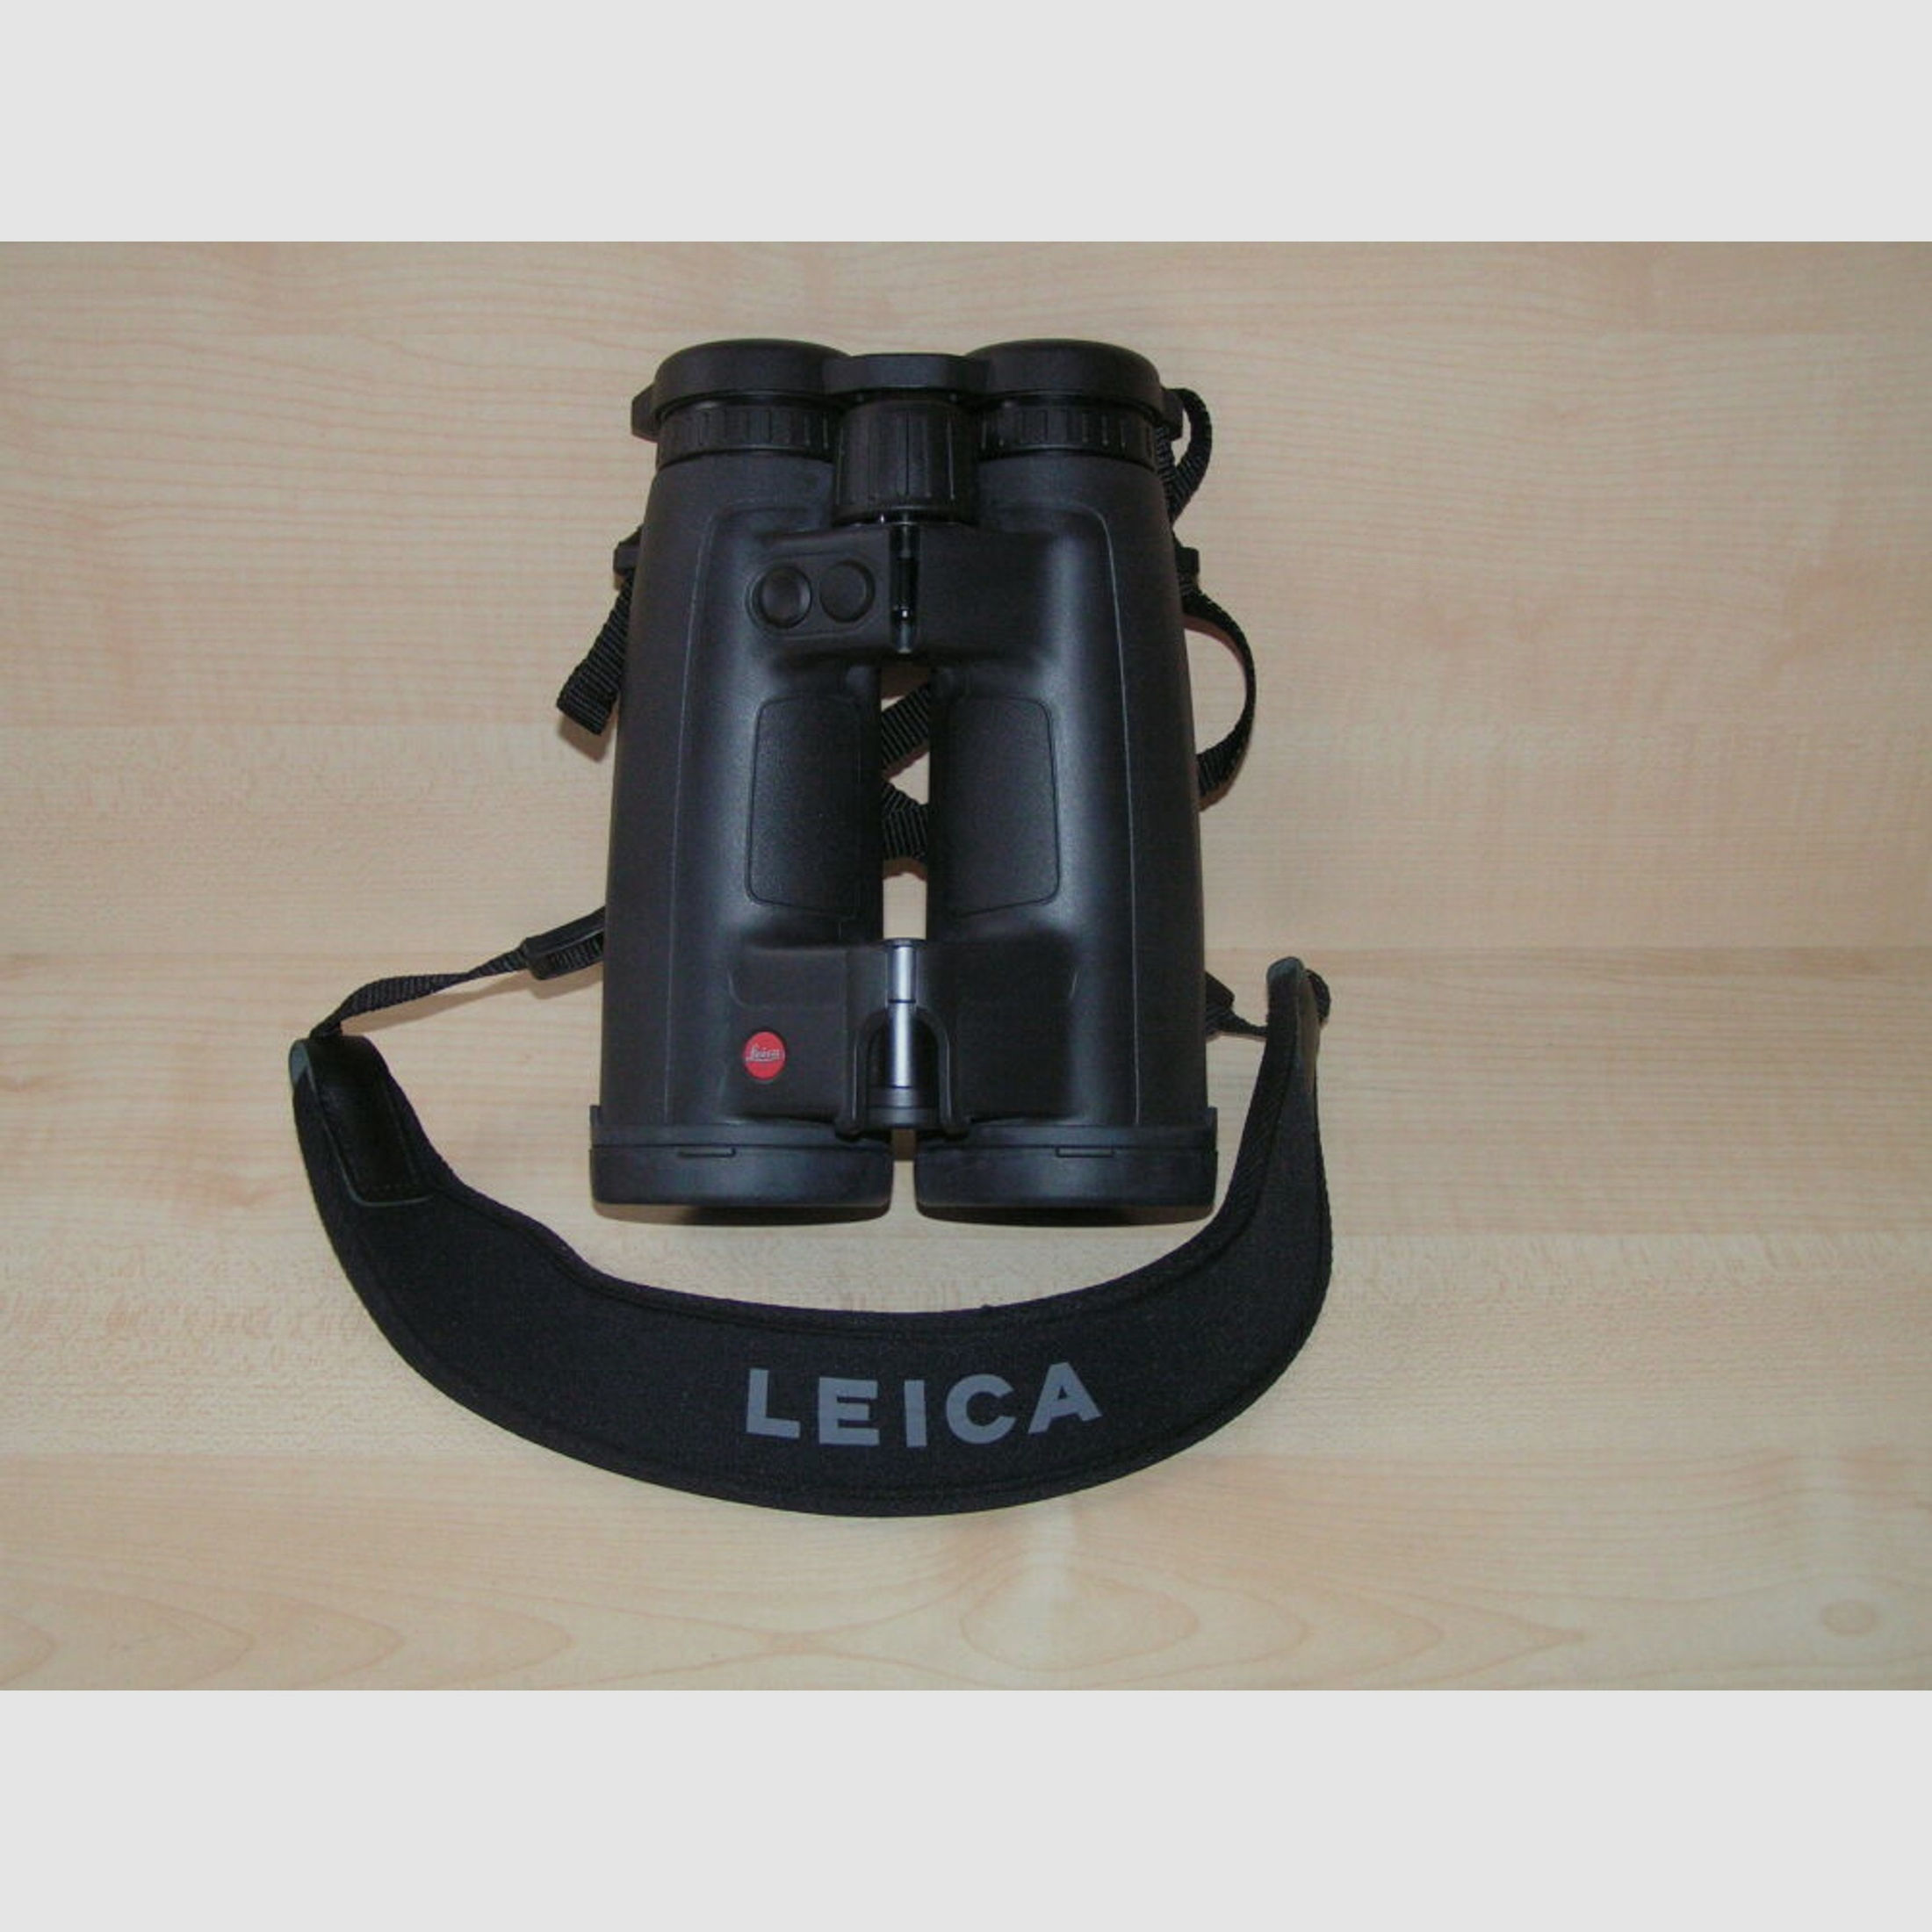 Leica	 Geovid 8 x 56 HD-R 2700